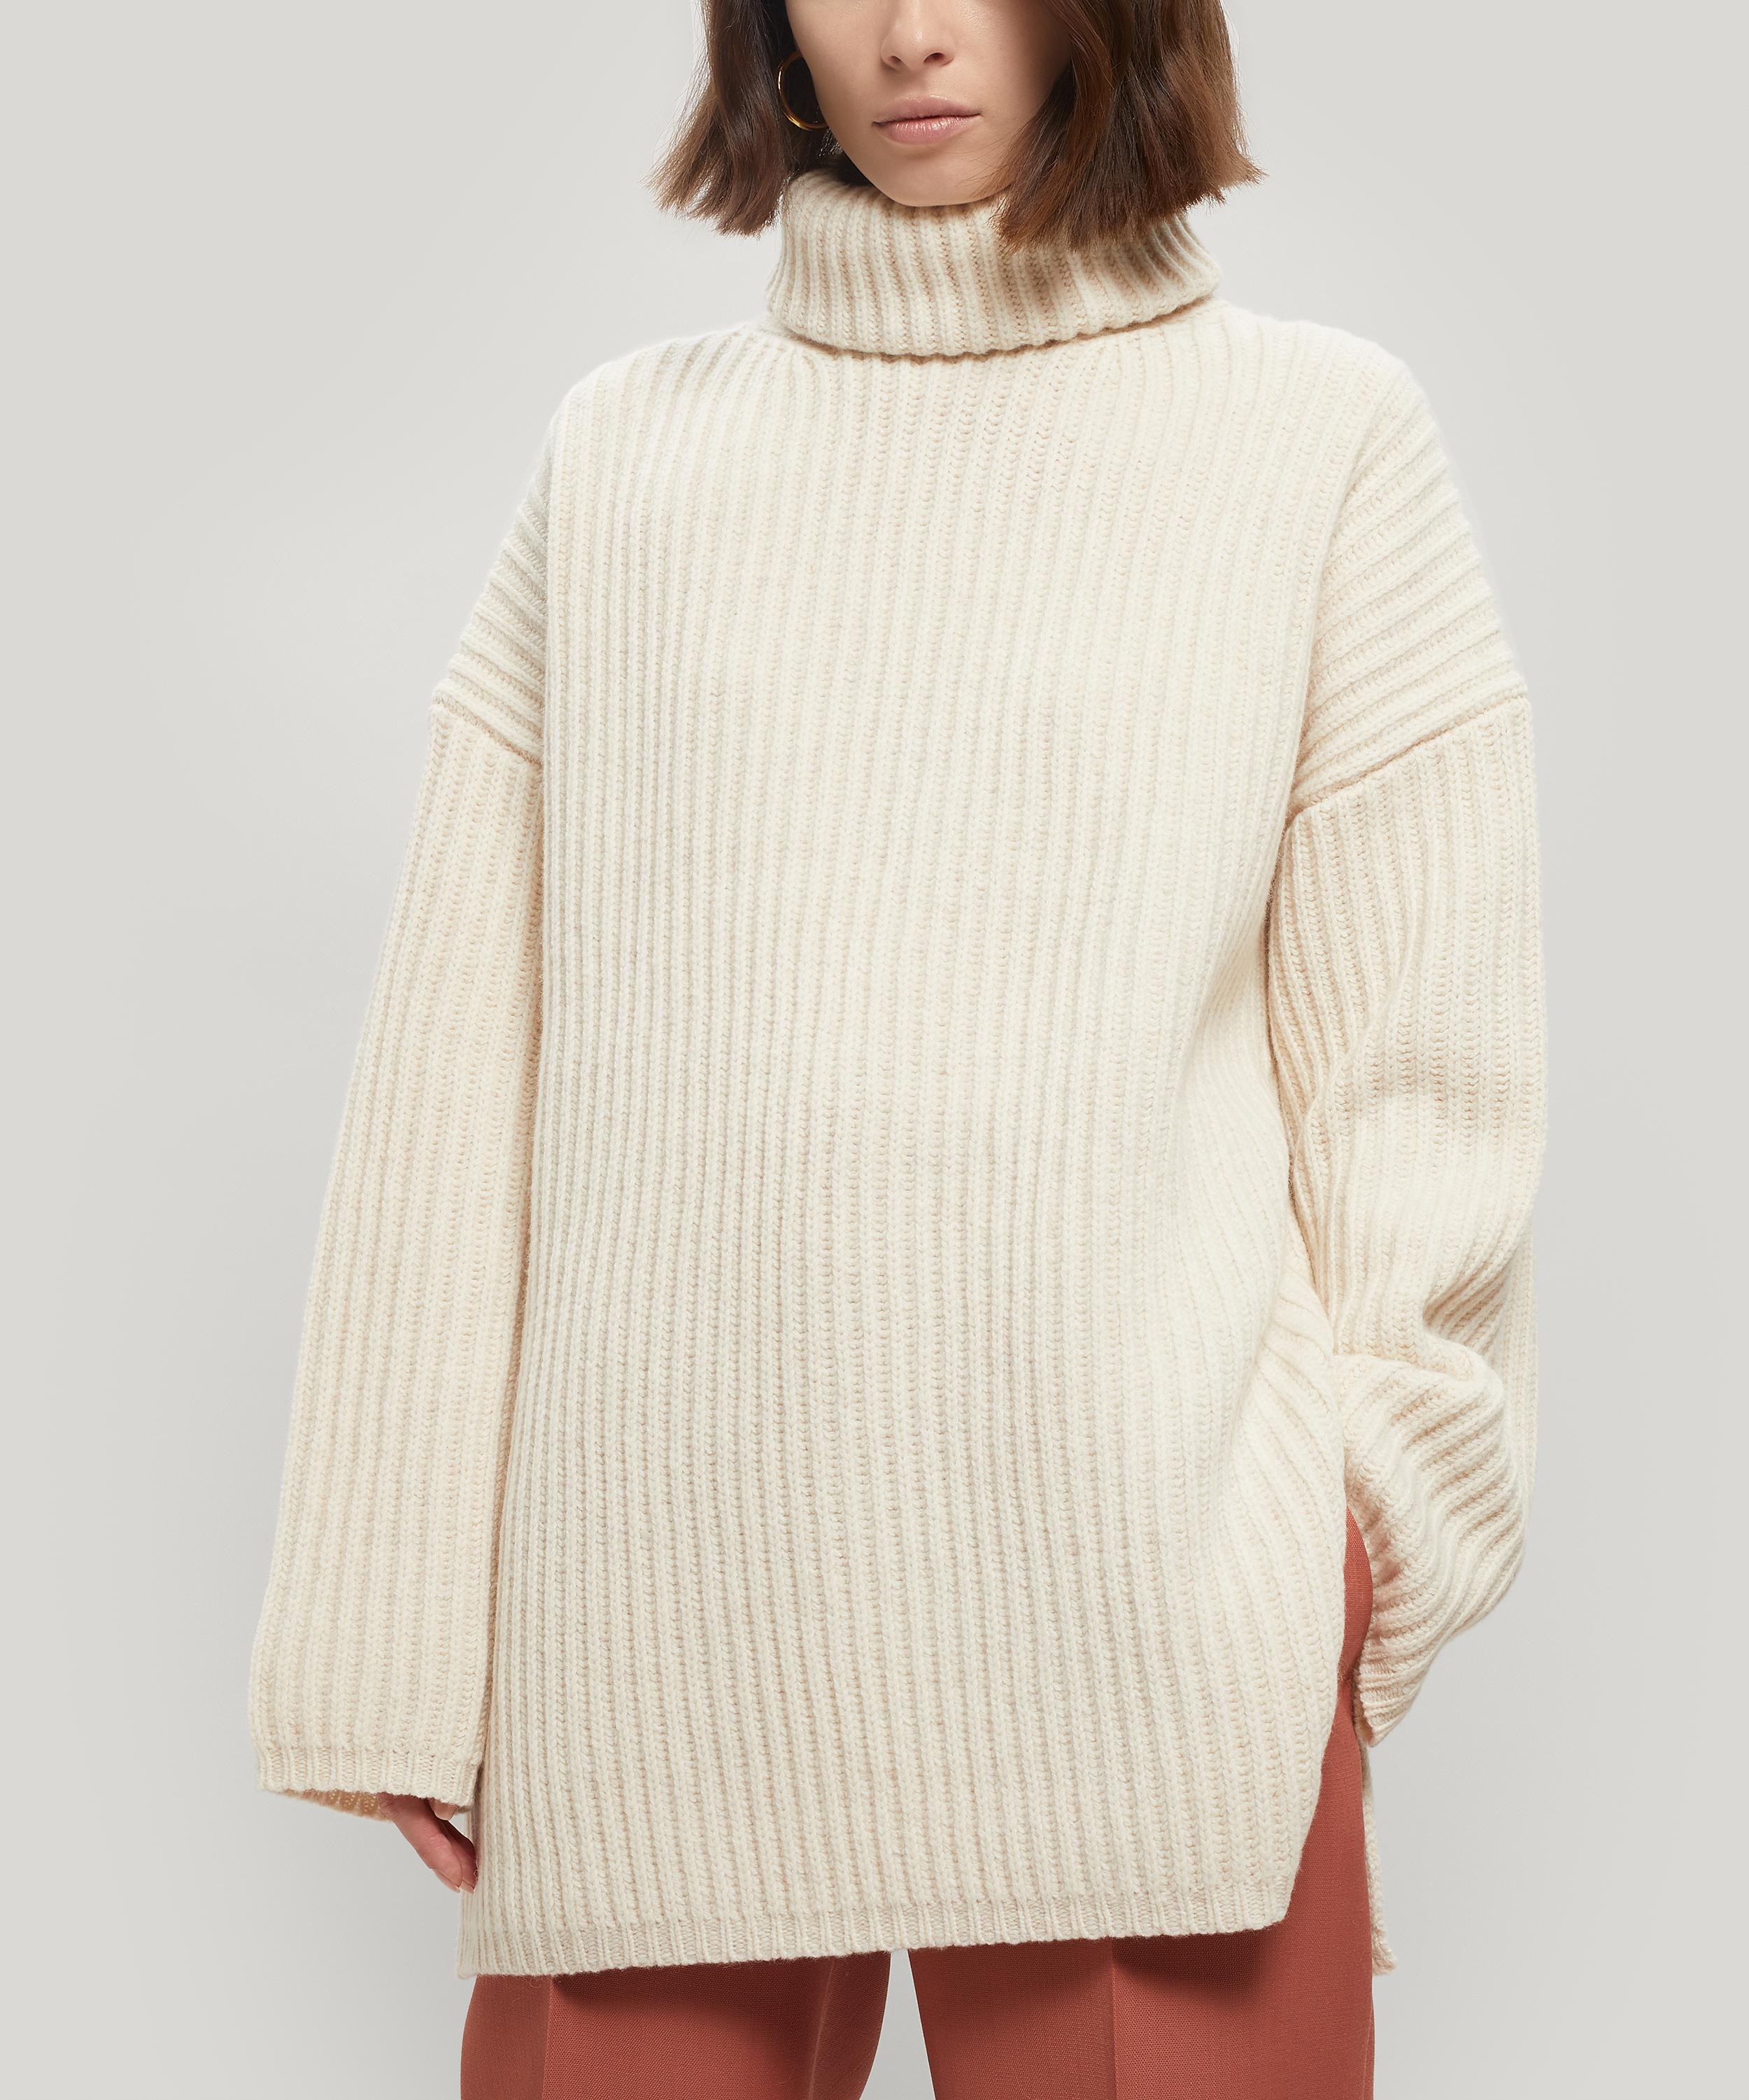 acne studios sweater sale